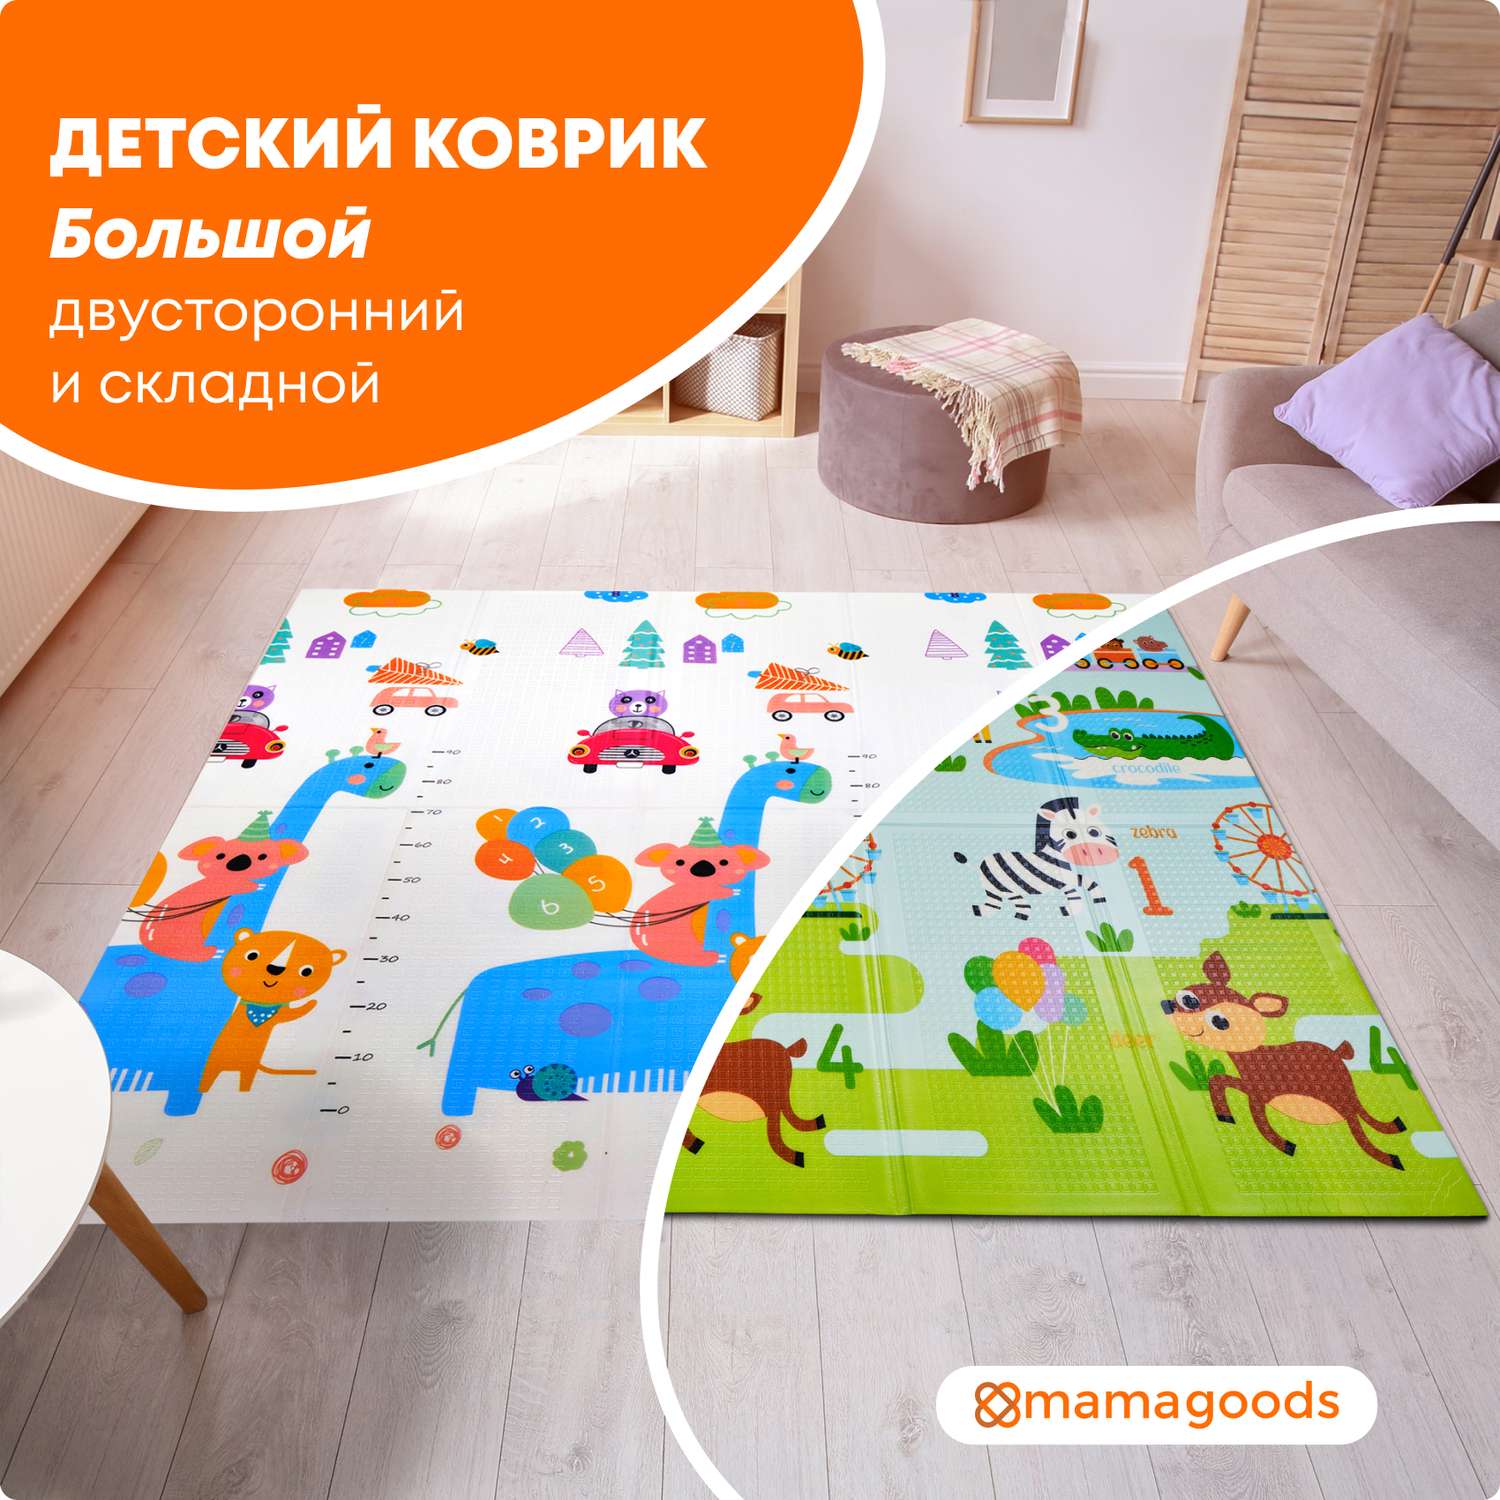 Детские развивающие коврики для новорожденных, купить в интернет-магазине